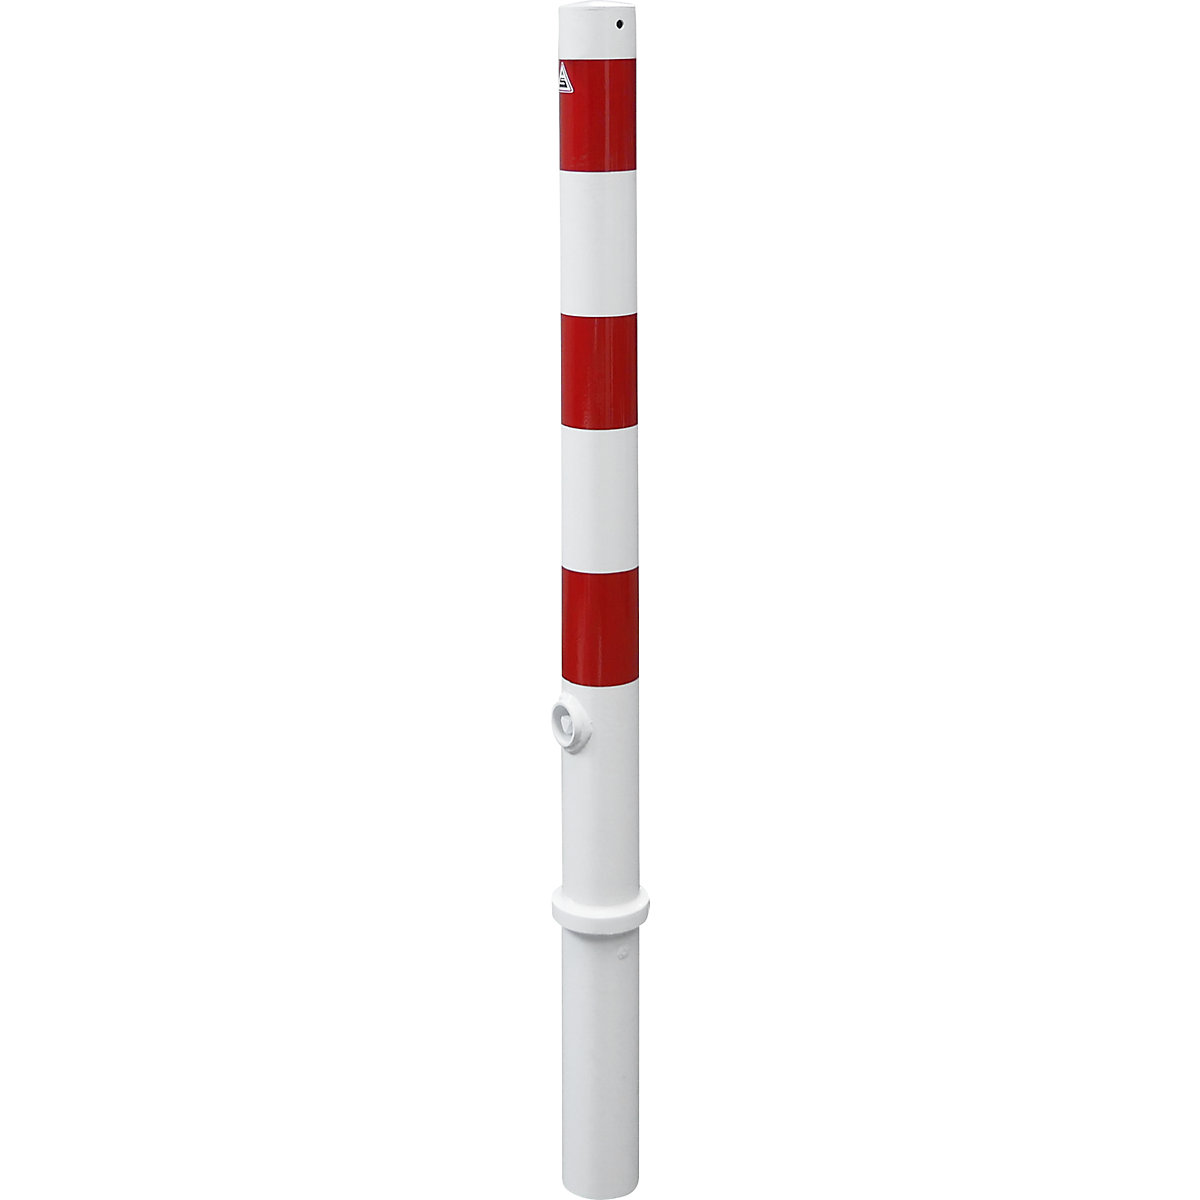 Stupić za ograđivanje, Ø 76 mm, u bijelo / crvenoj boji, s mogućnošću vađenja, bez ušice